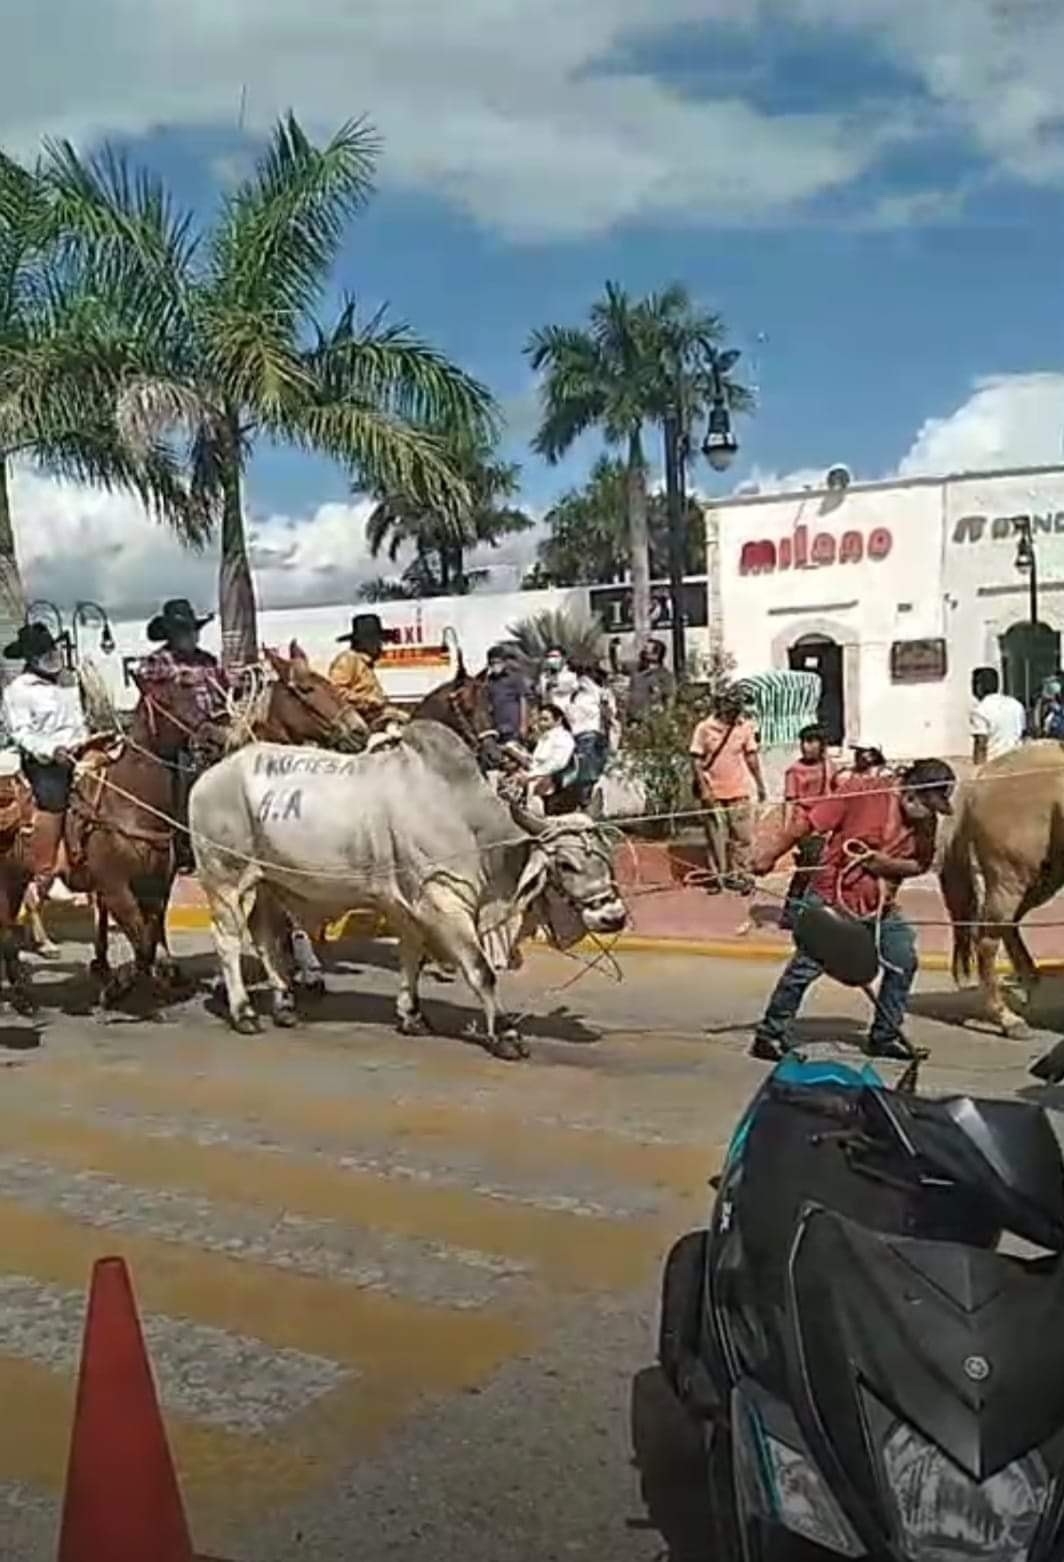 Los cabalgantes exhibieron al bovino con la leyenda “Promesa del H. Ayuntamiento